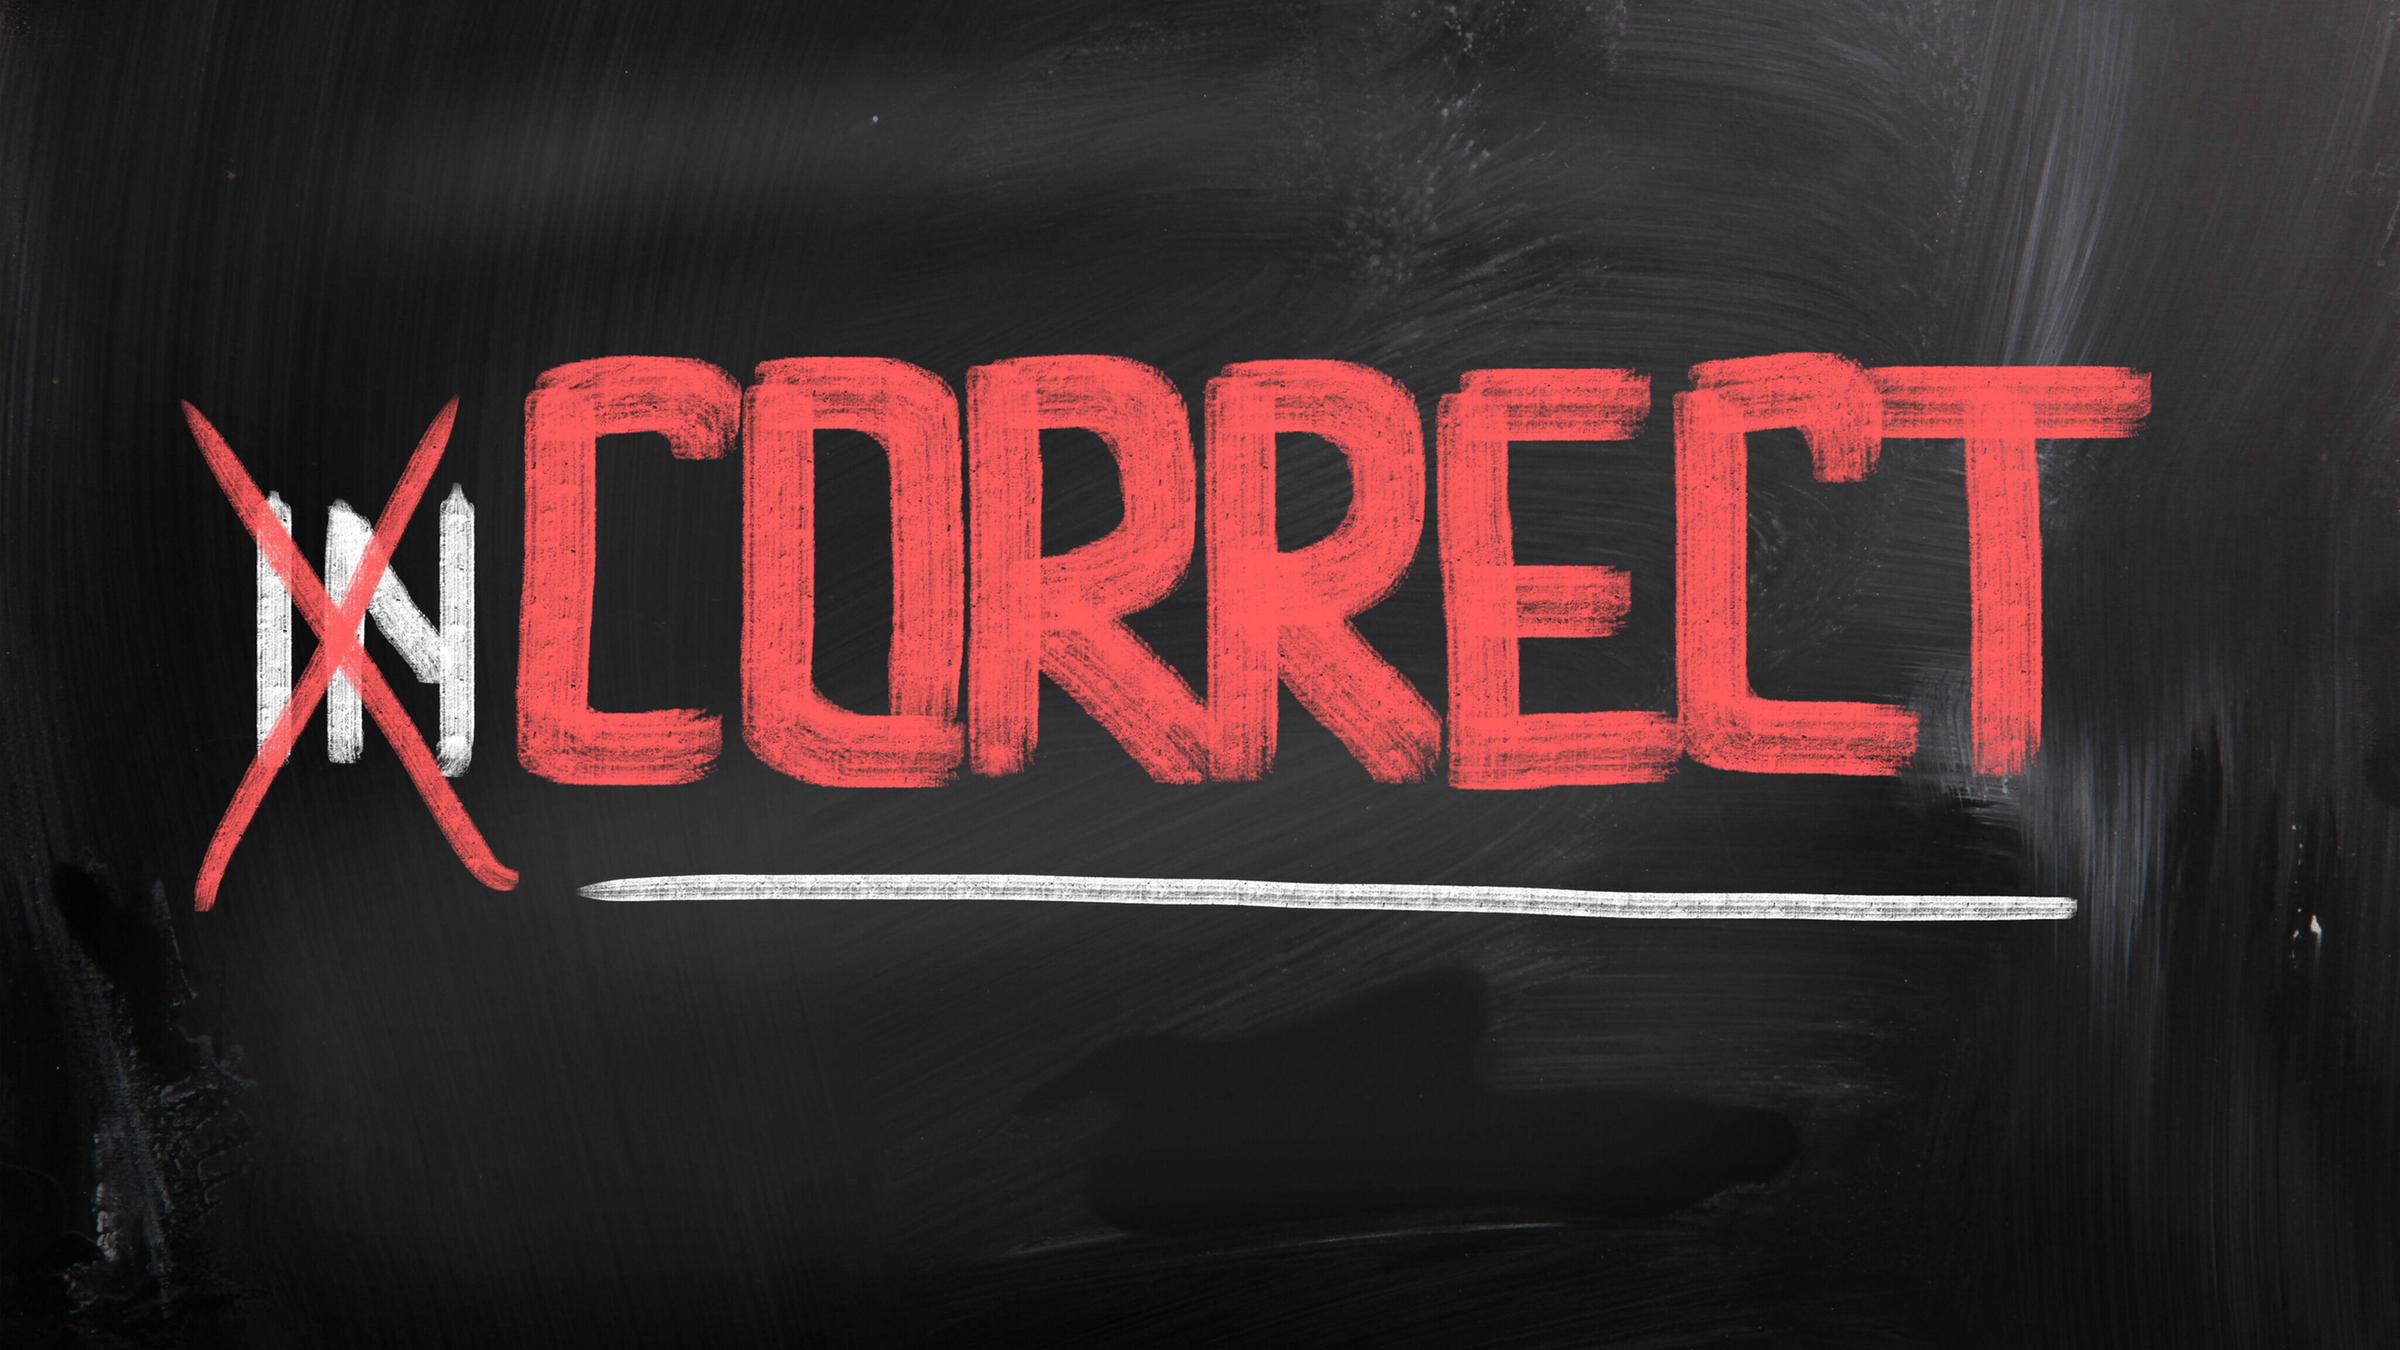 Das Wort "incorrect" steht auf einer Tafel, die ersten beiden Buchstab...</p>

                        <a href=